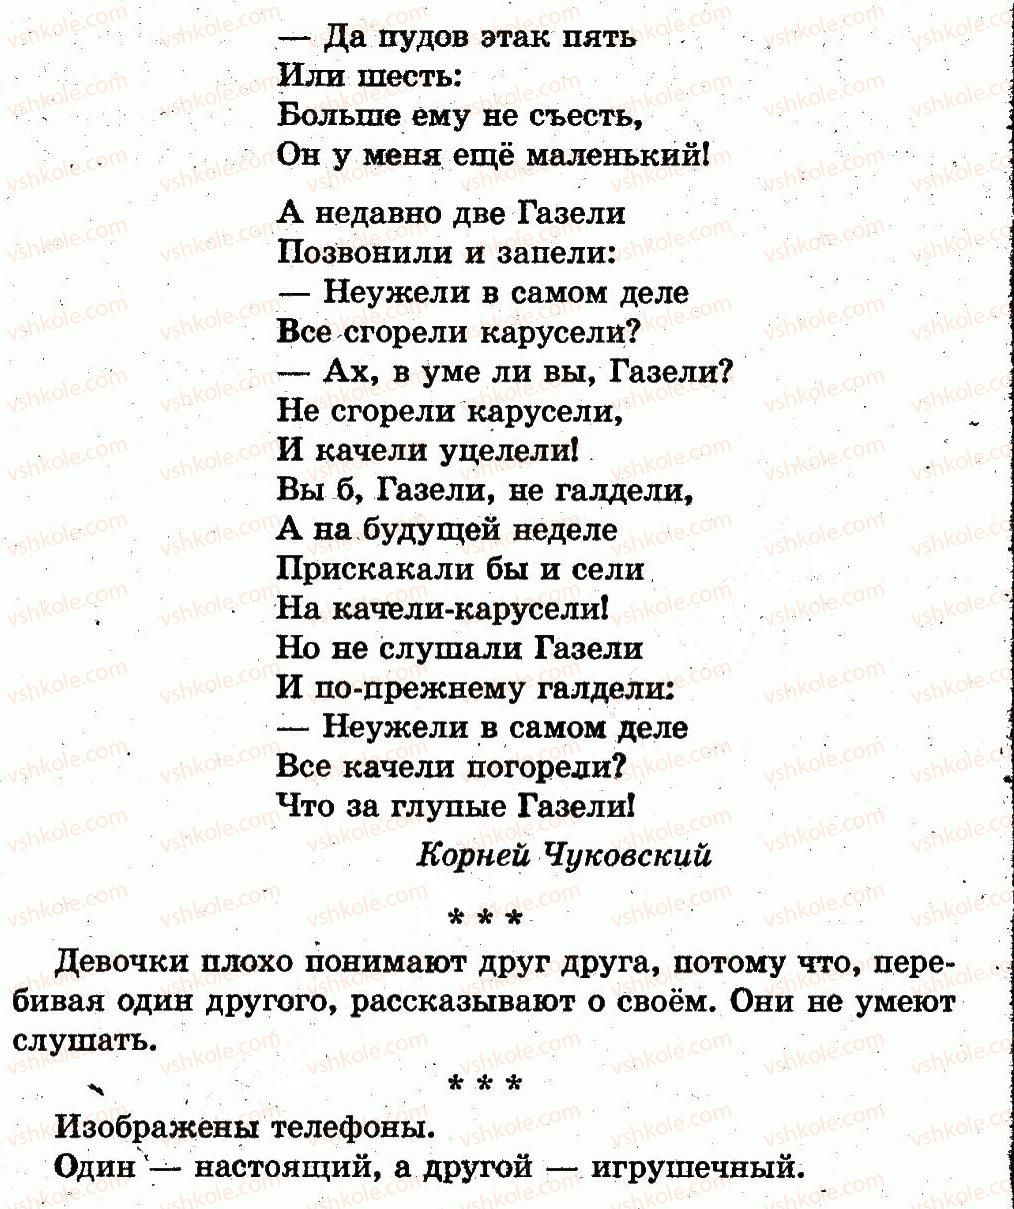 1-russkij-yazyk-in-lapshina-nn-zorka-2012--vremya-sutki-страница96-rnd4438.jpg